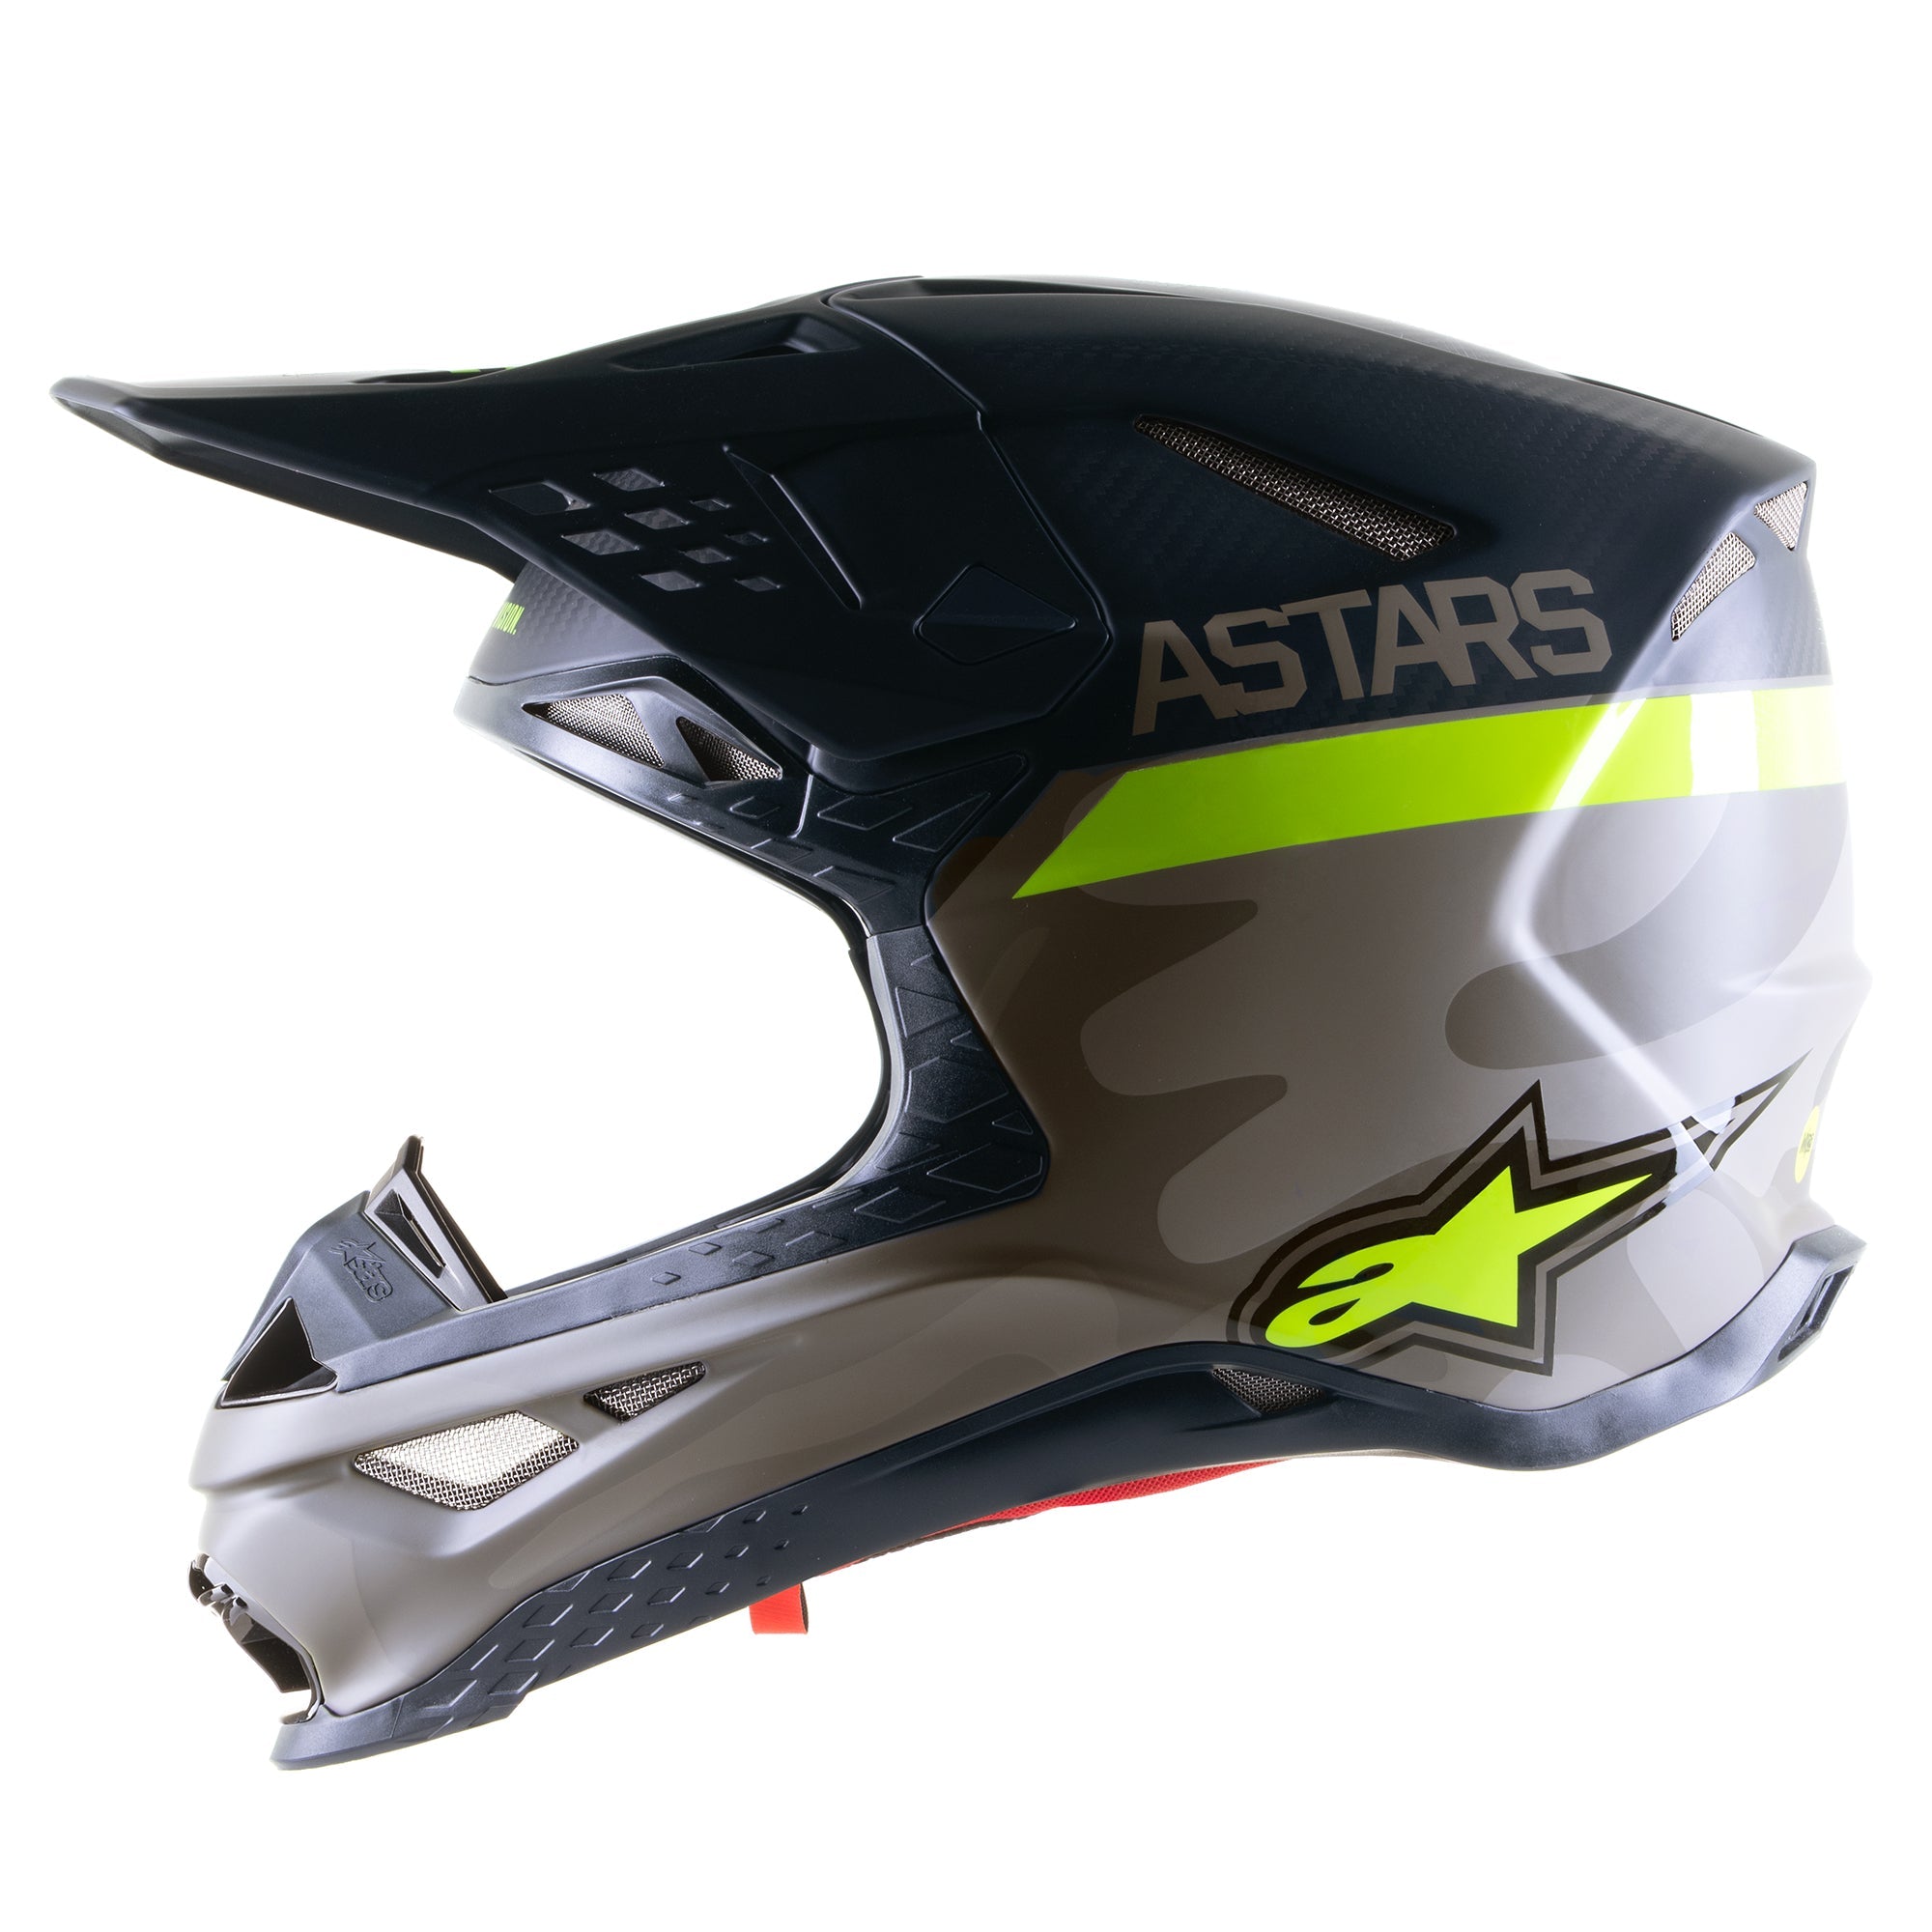 Limited Edition AMS 21 Supertech S-M10 Helmet